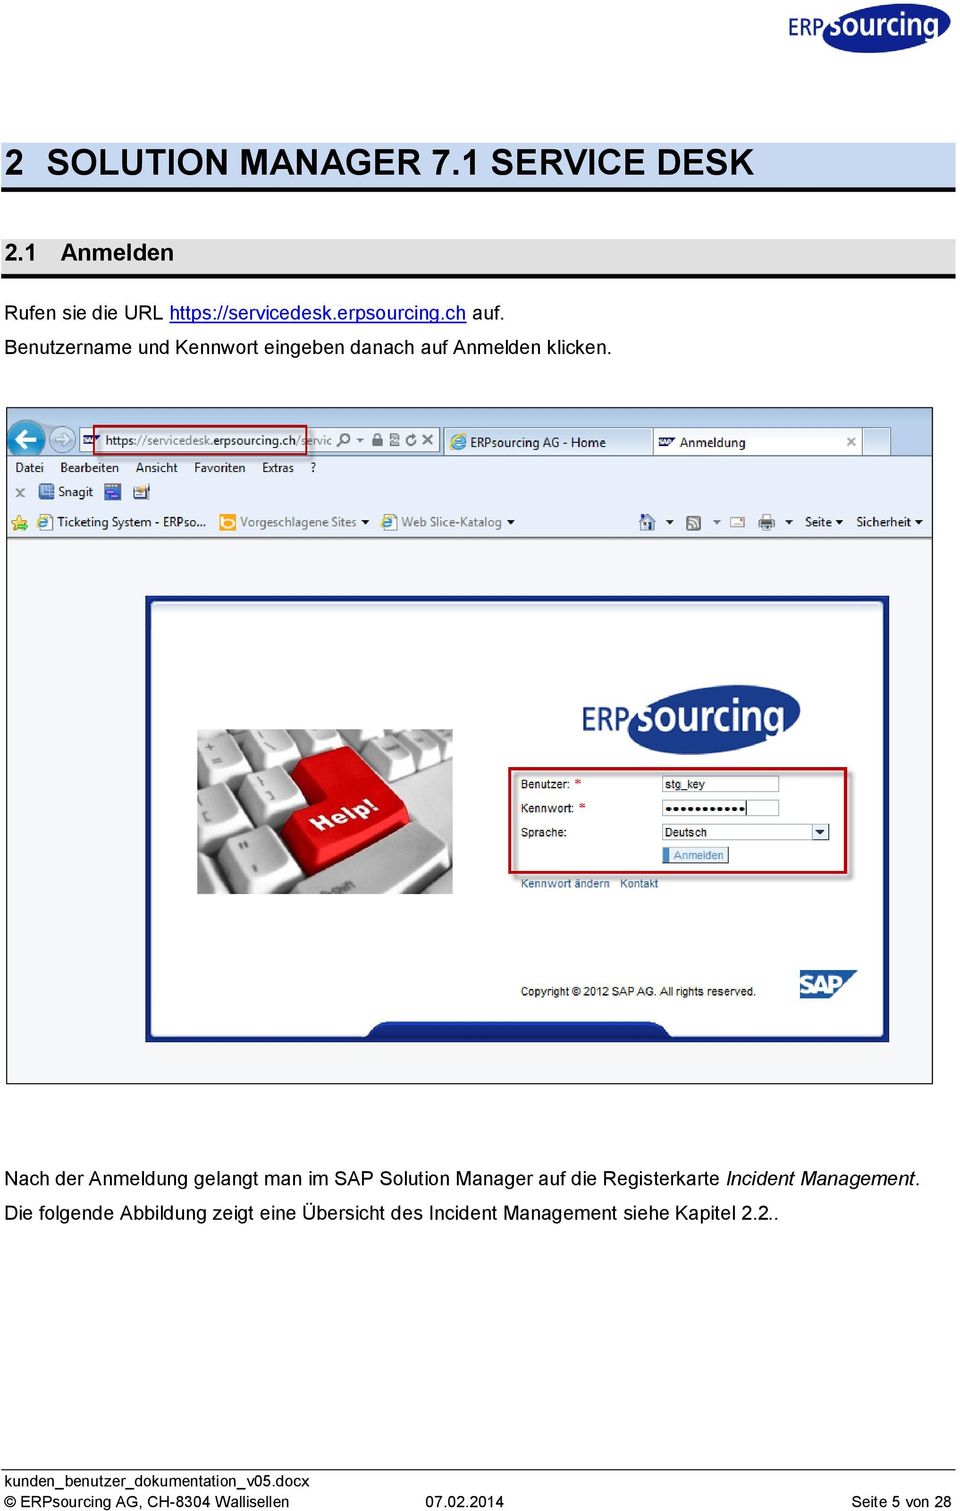 Nach der Anmeldung gelangt man im SAP Solution Manager auf die Registerkarte Incident Management.